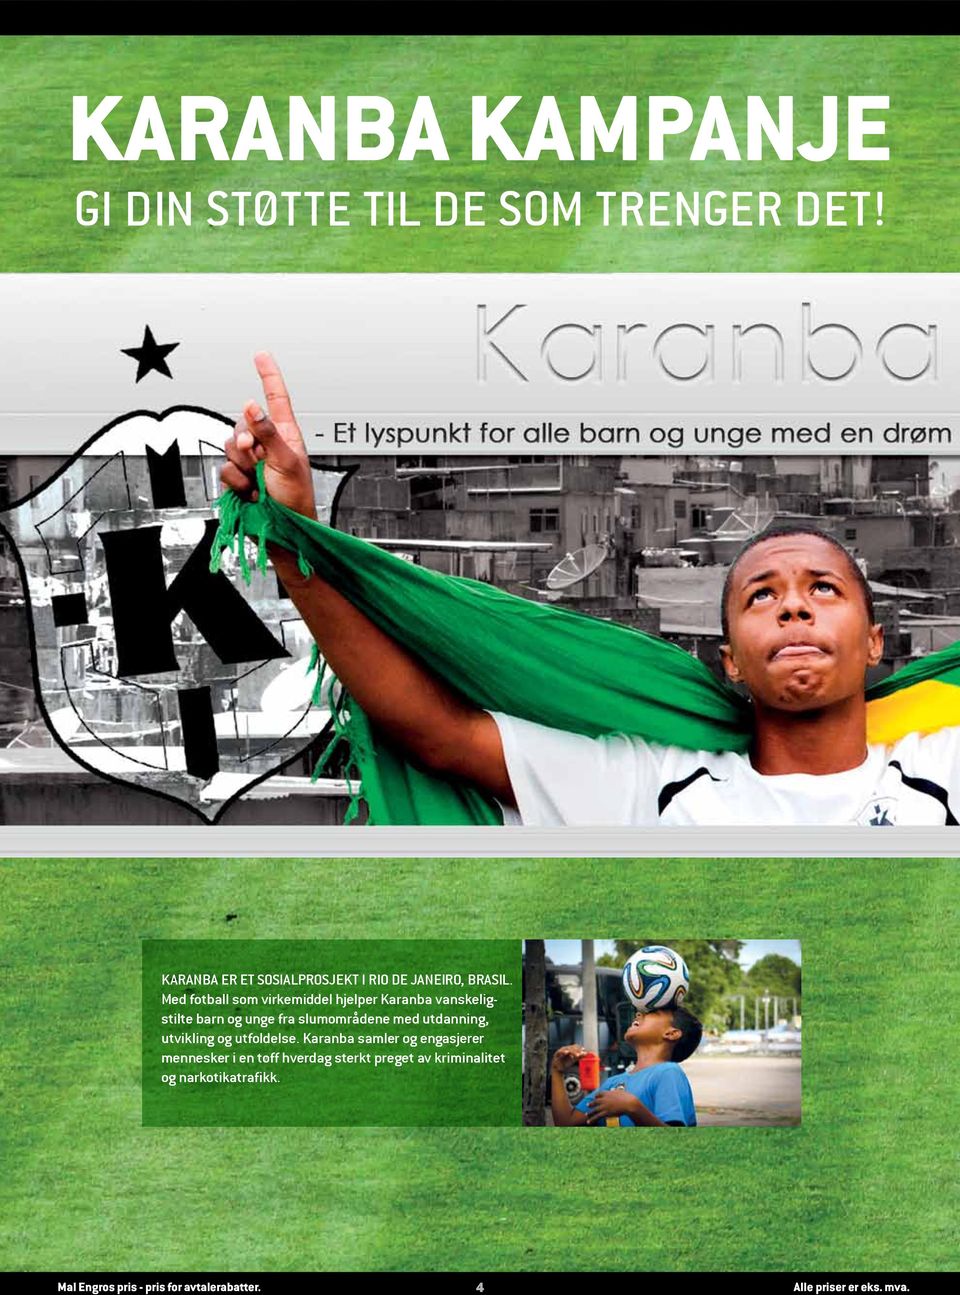 Med fotball som virkemiddel hjelper Karanba vanskeligstilte barn og unge fra